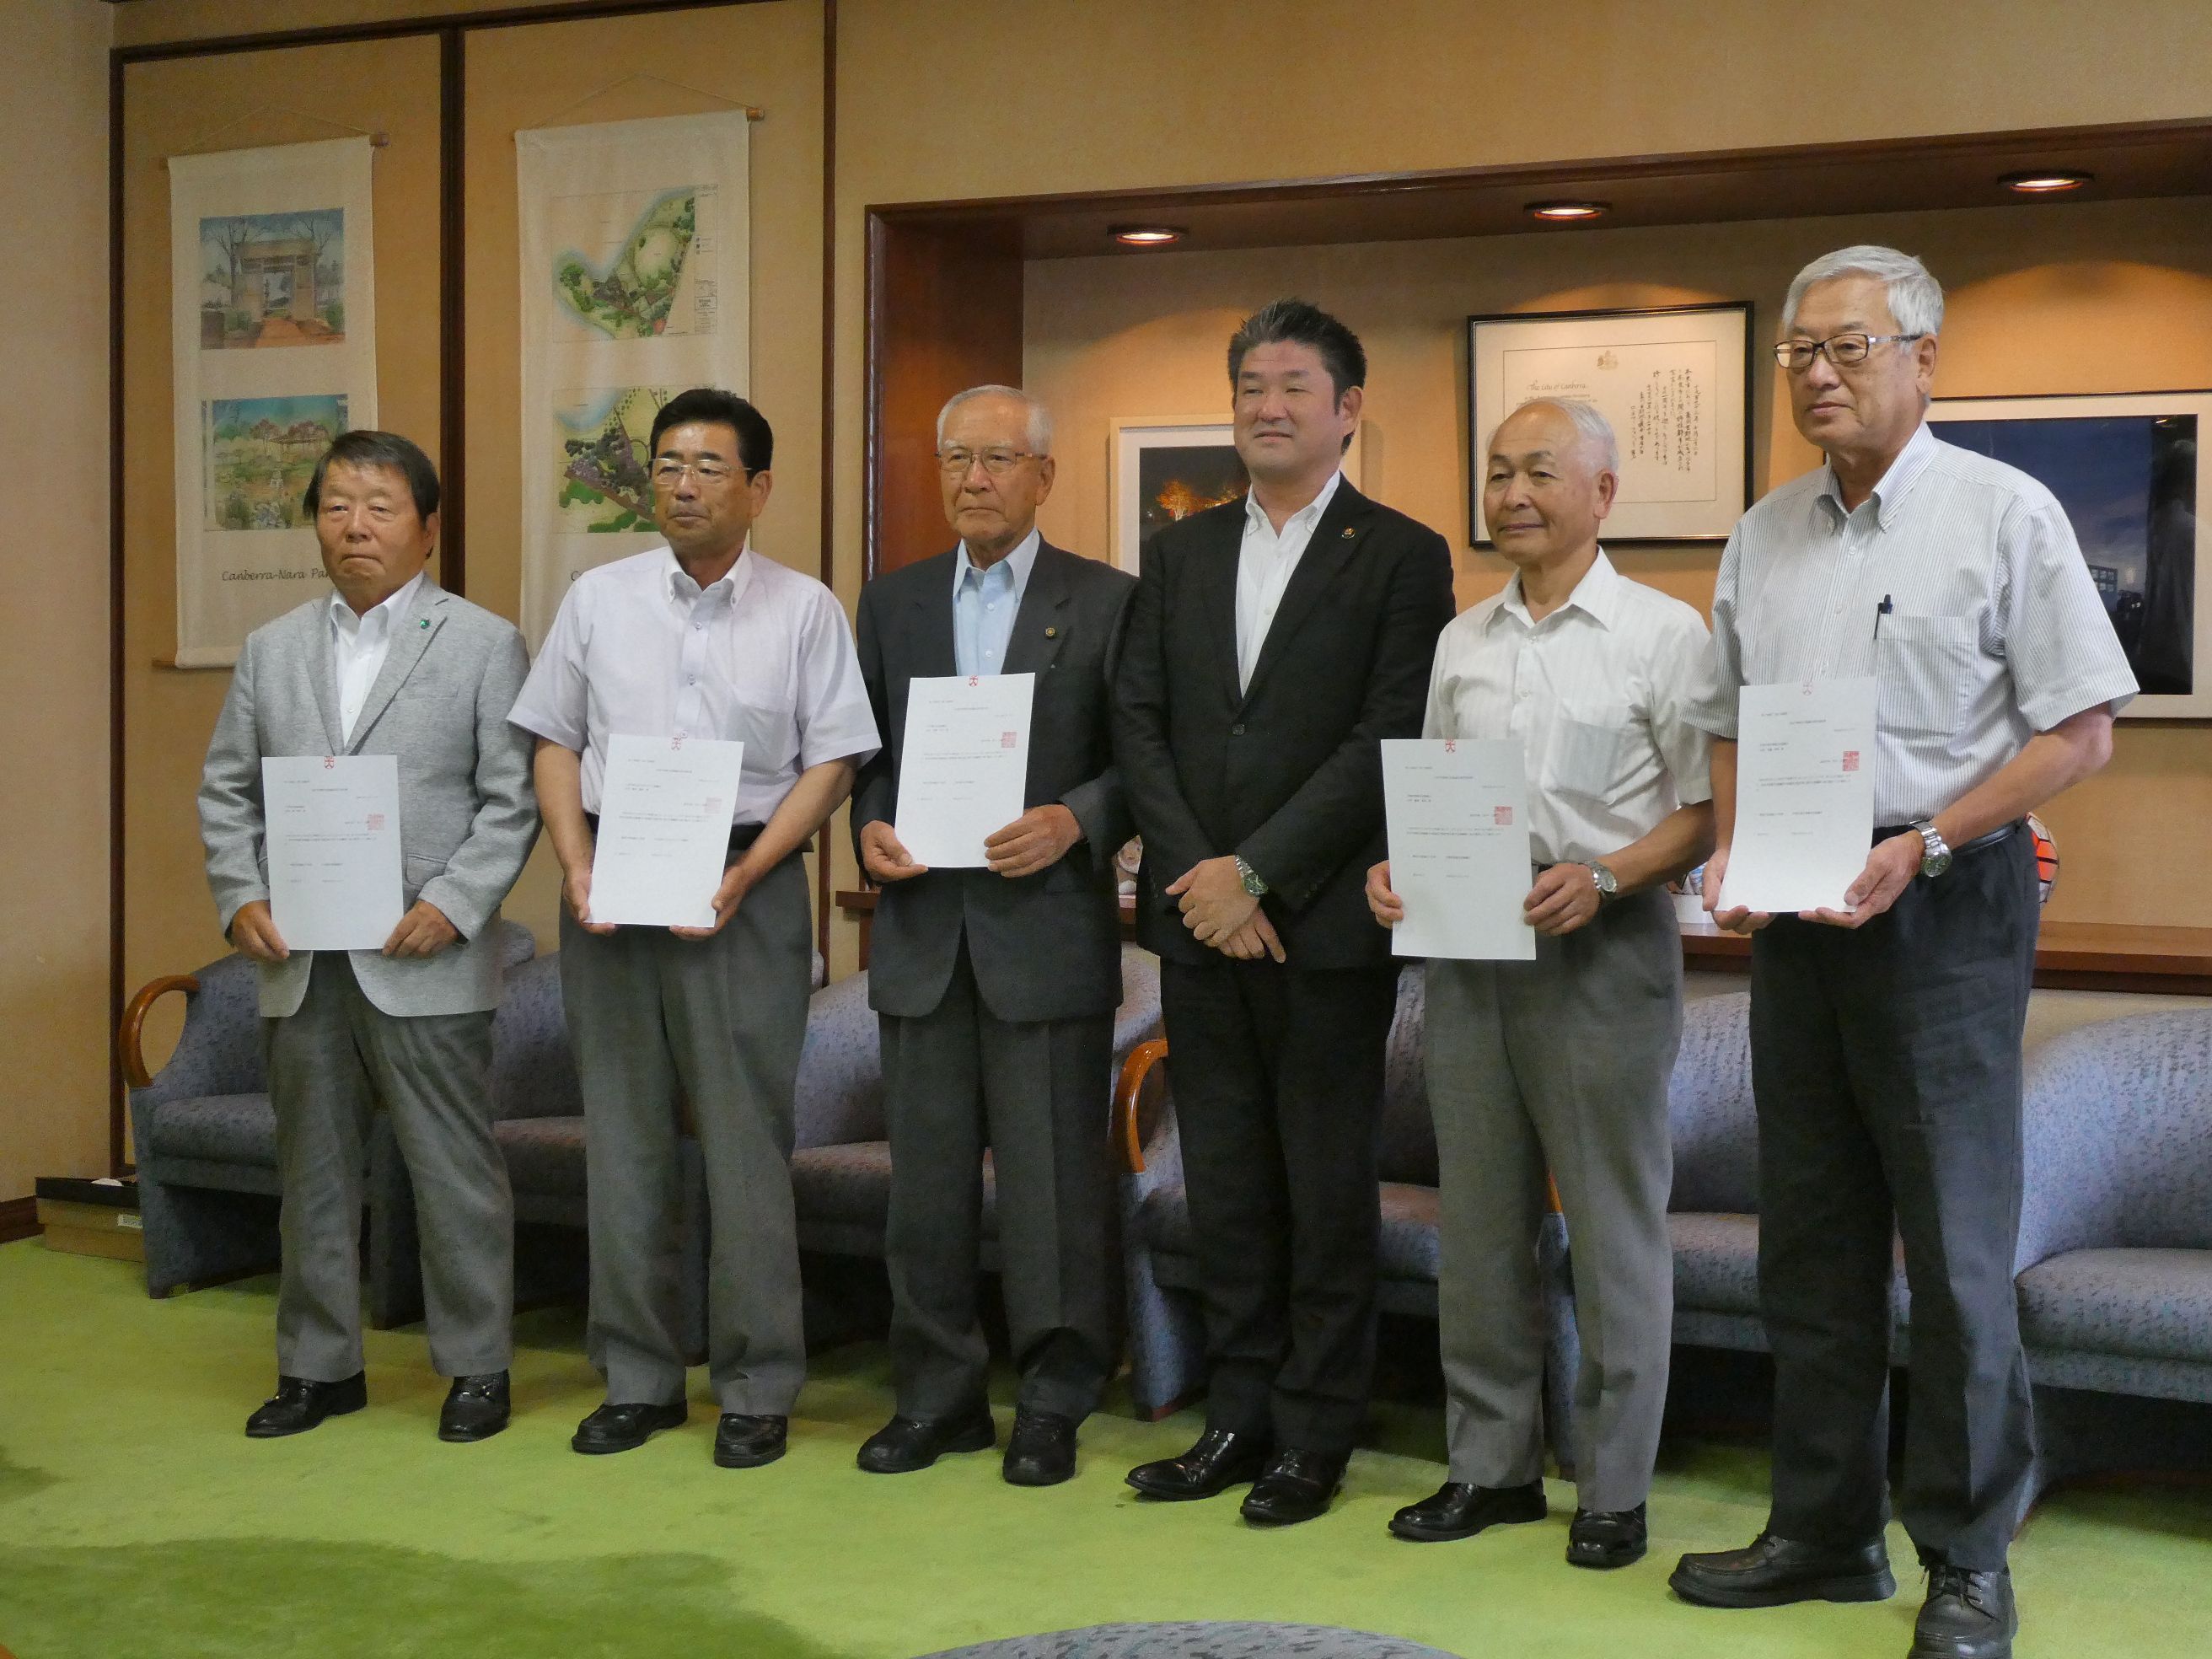 奈良市地域自治協議会認定通知書交付式の画像